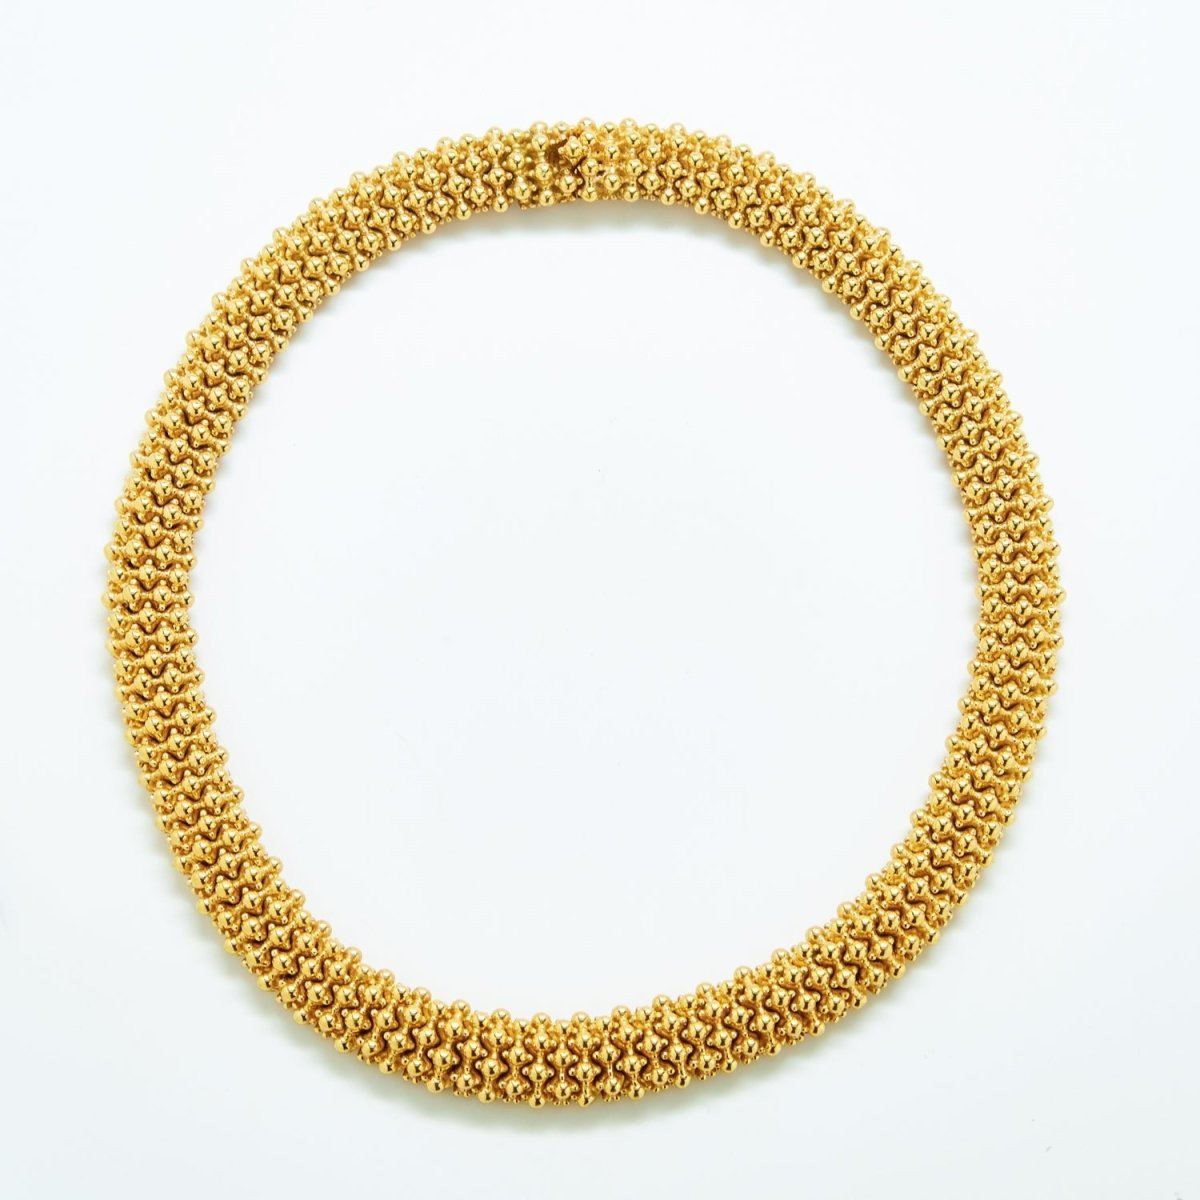 Vintage Ciner Textured Gold Statement Necklace - Admiral Row